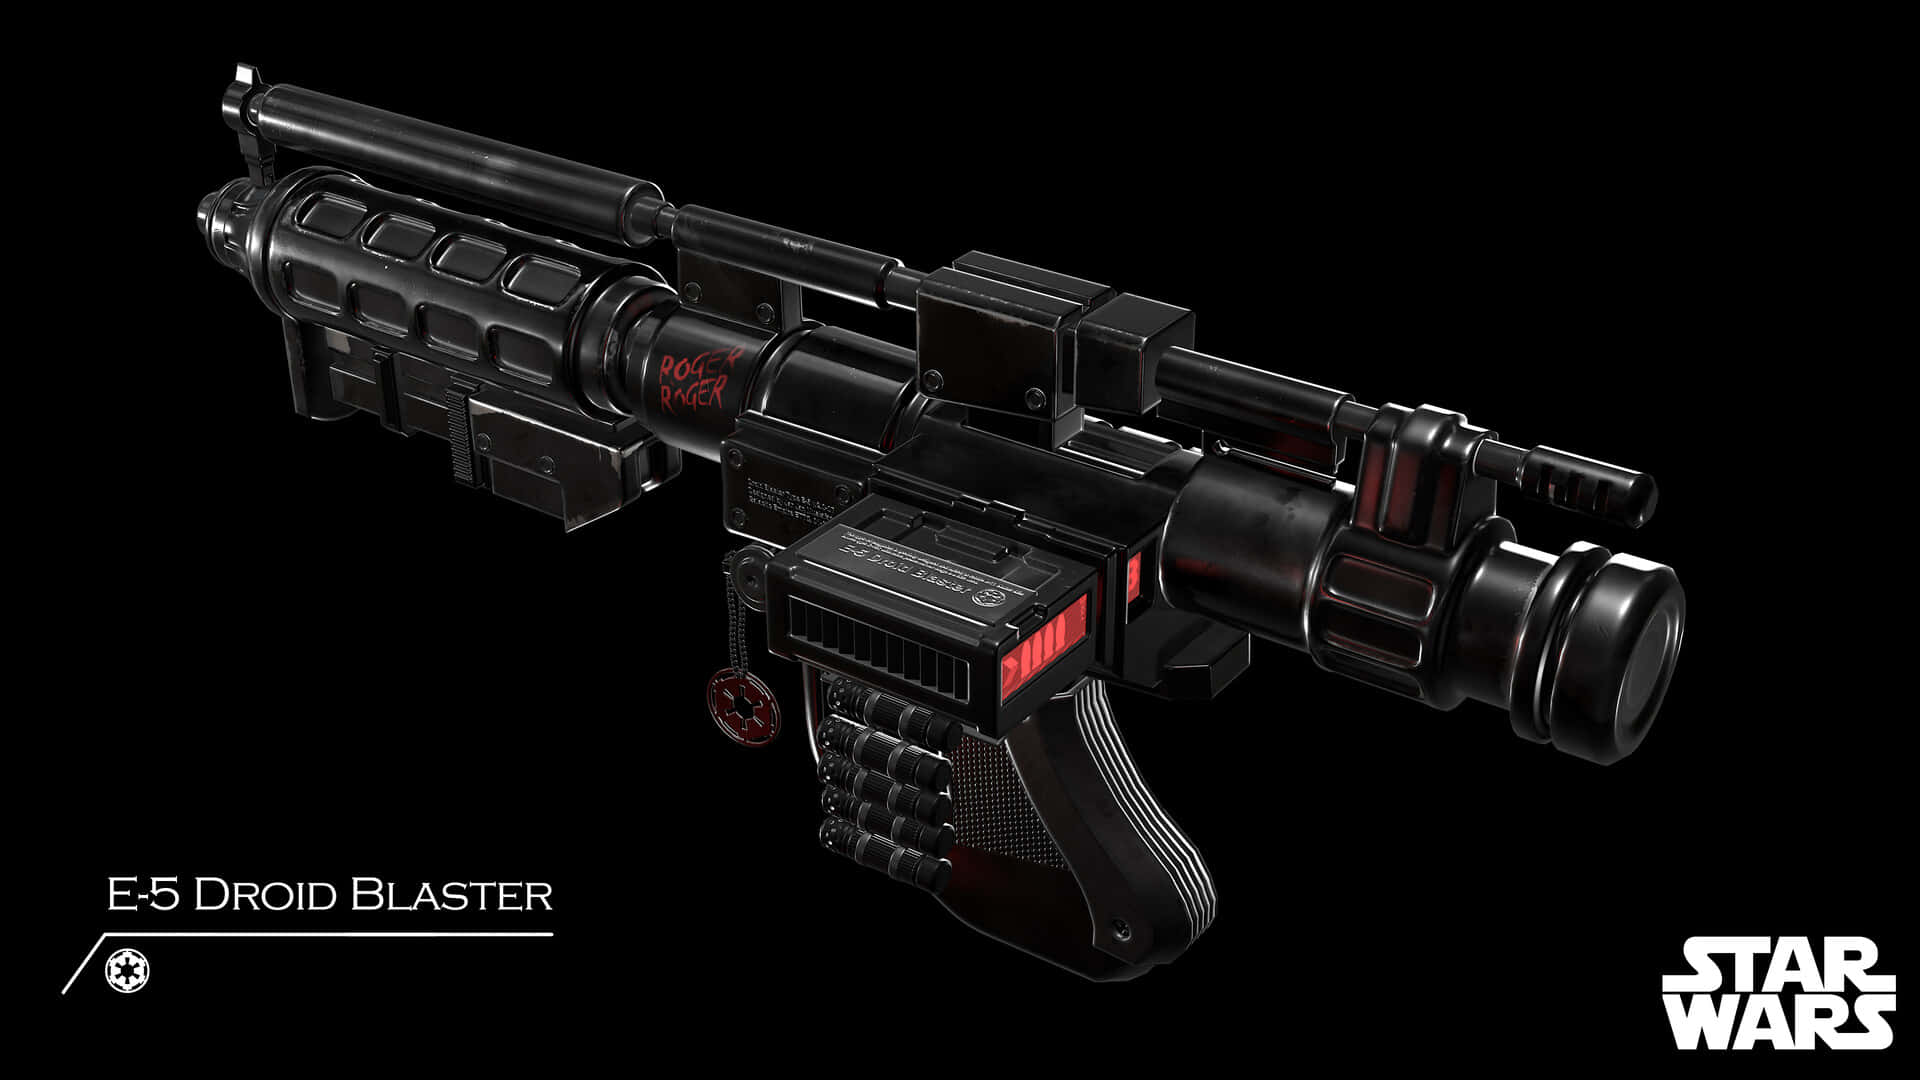 Futuristic Blaster Rifles on Display Wallpaper